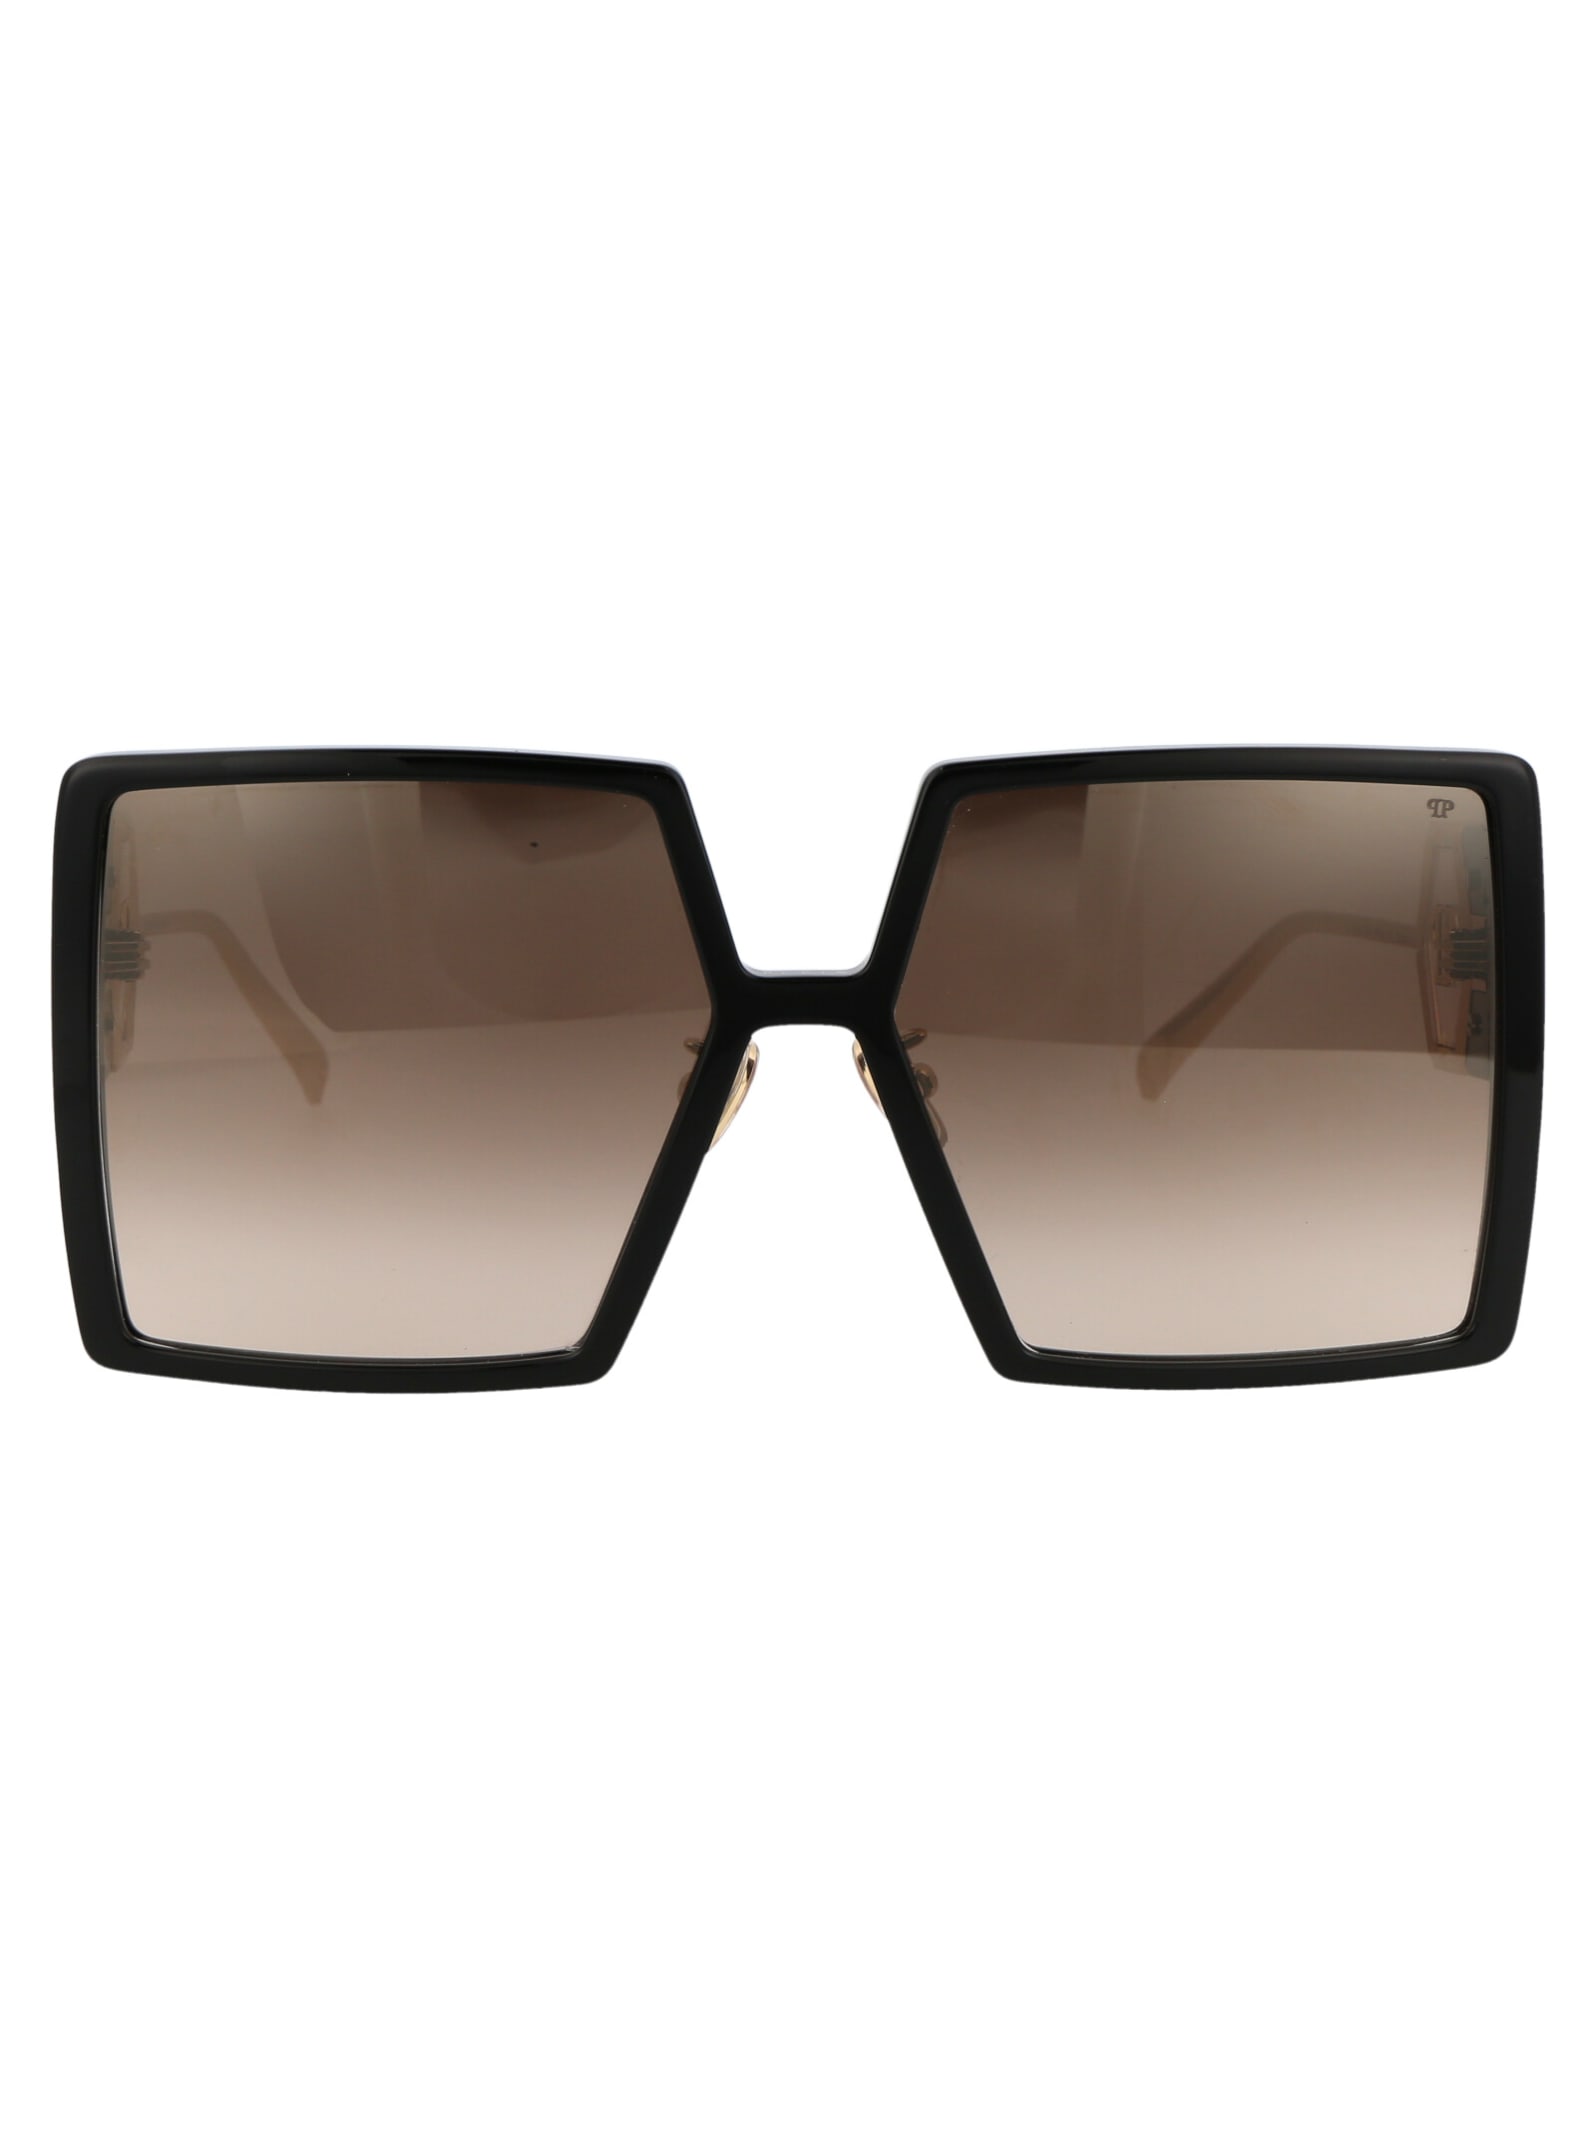 Philipp Plein Spp028m Sunglasses